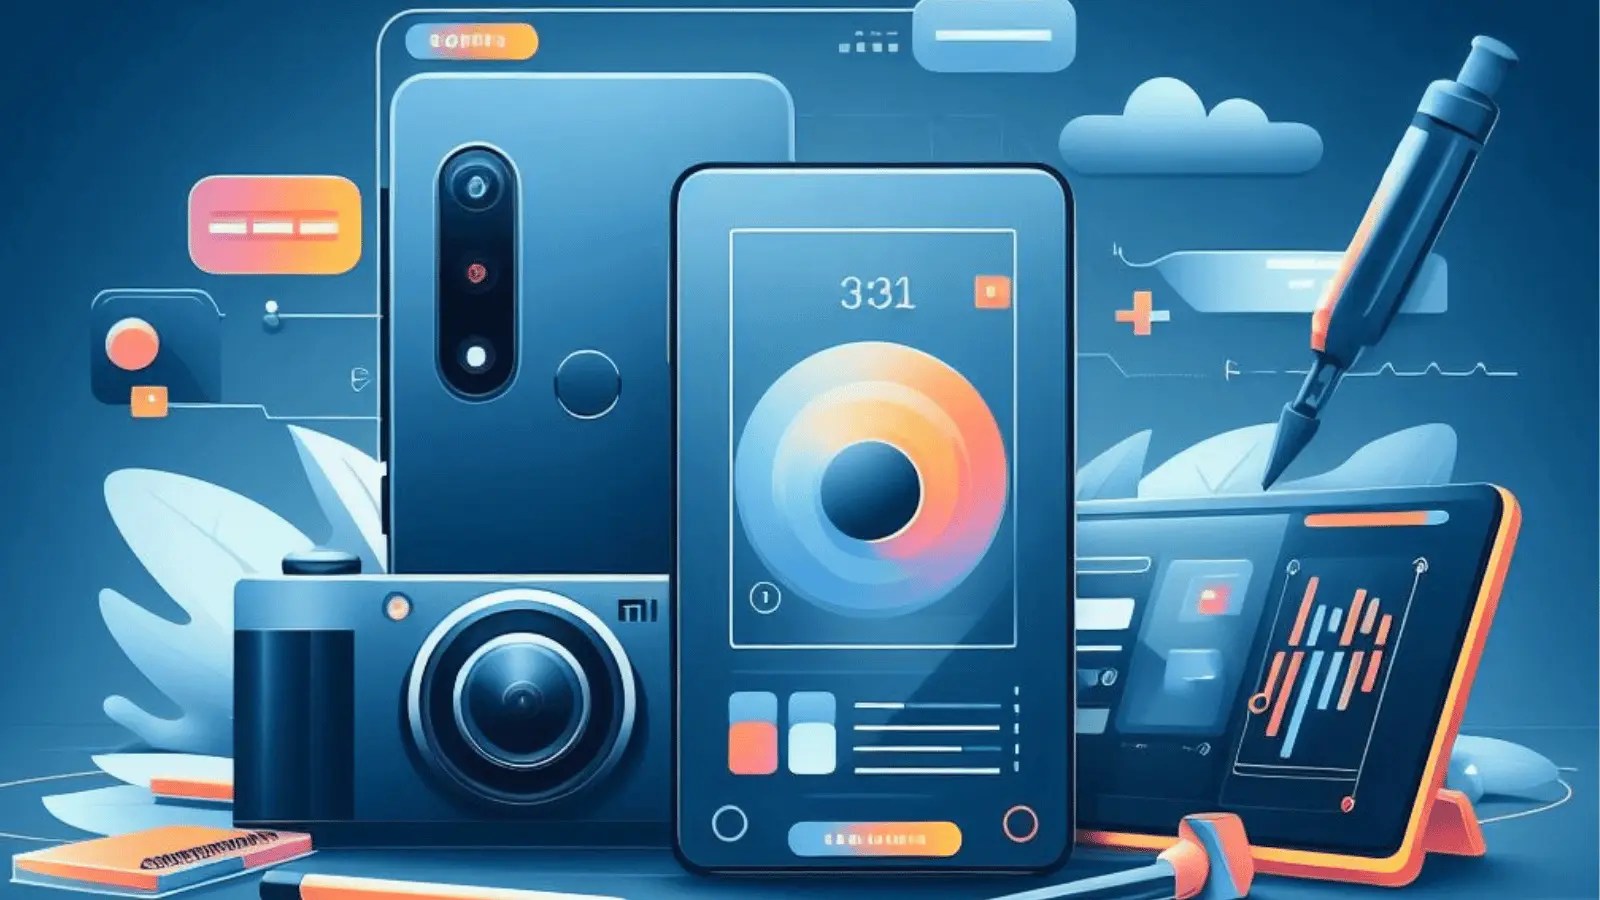 Pemutar Musik Xiaomi Redmi 2. Mudah! Cara Menambahkan Lirik Di Musik Xiaomi